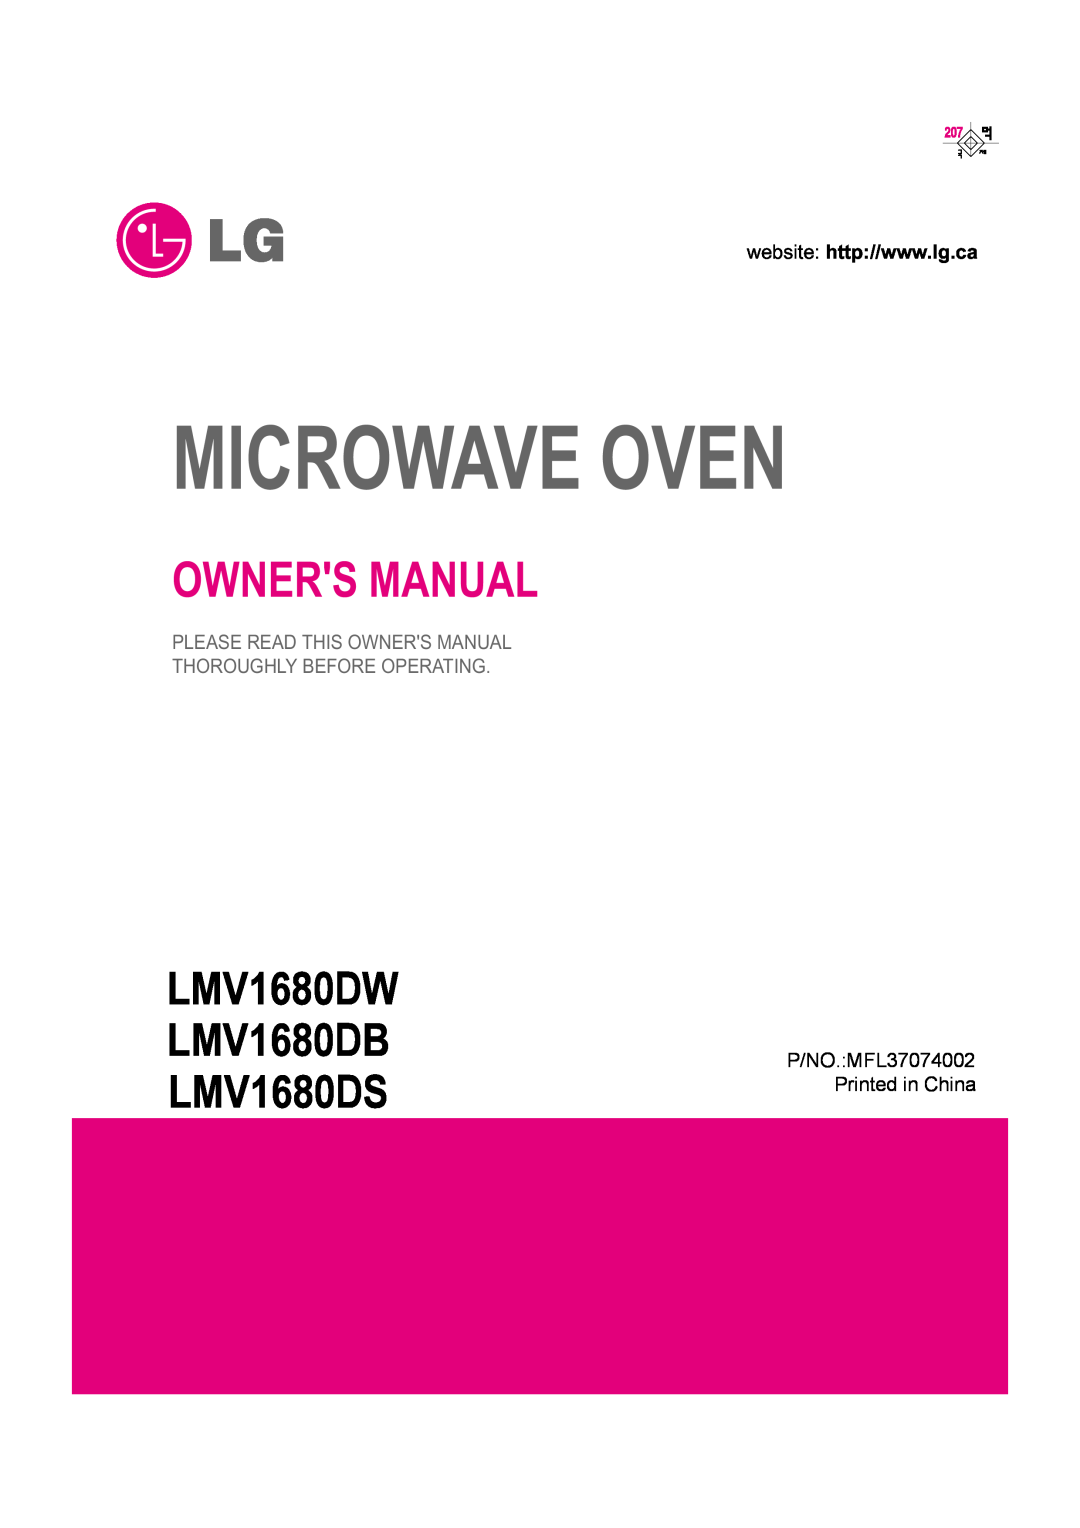 LG Electronics owner manual Microwave Oven, LMV1680DW LMV1680DB LMV1680DS 